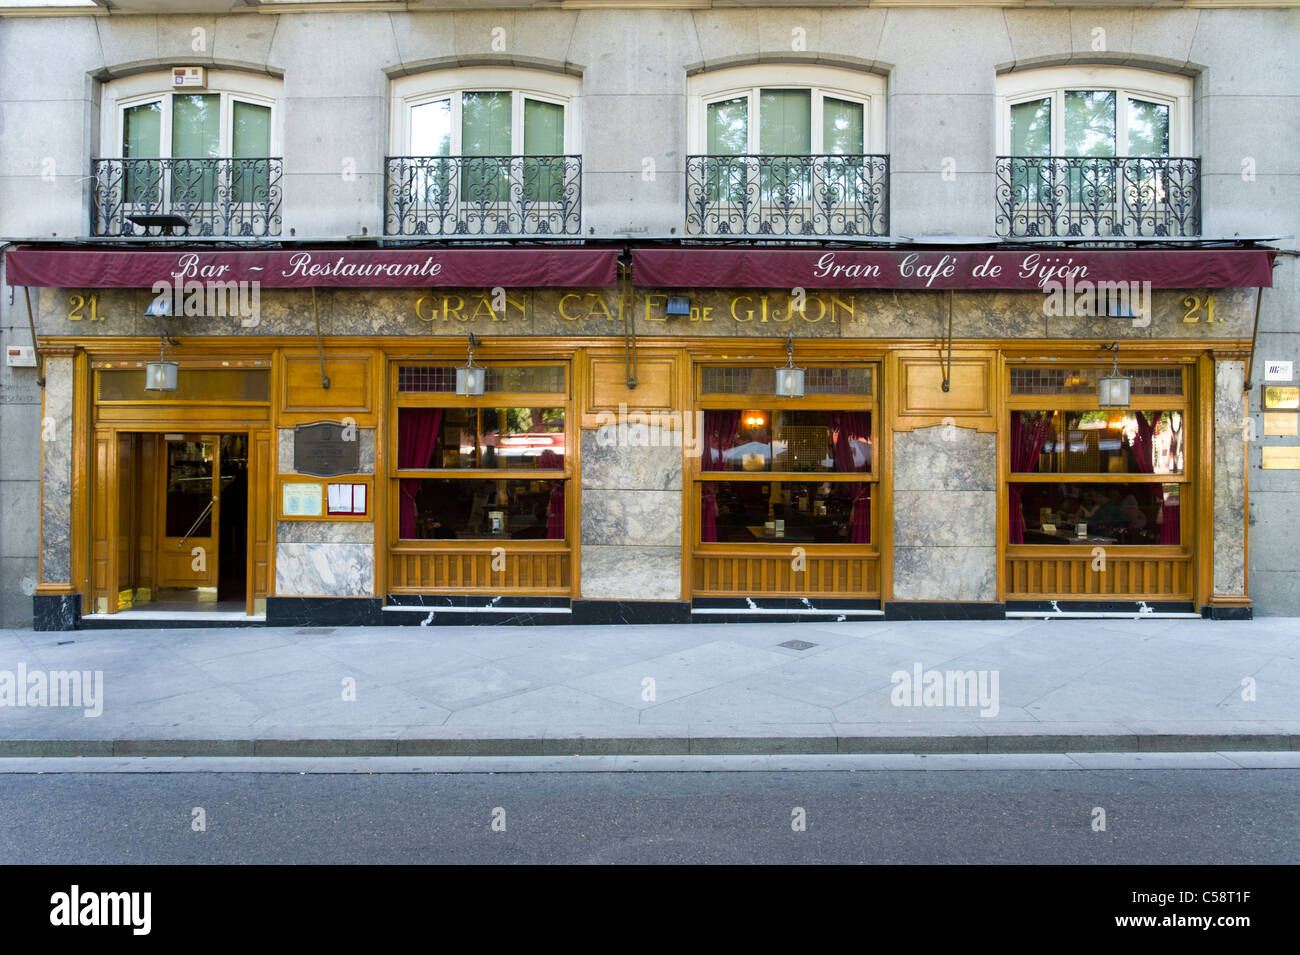 Der Gran Cafe de Gijon am Paseo de Recoletos, Madrid, Spanien Stockfoto